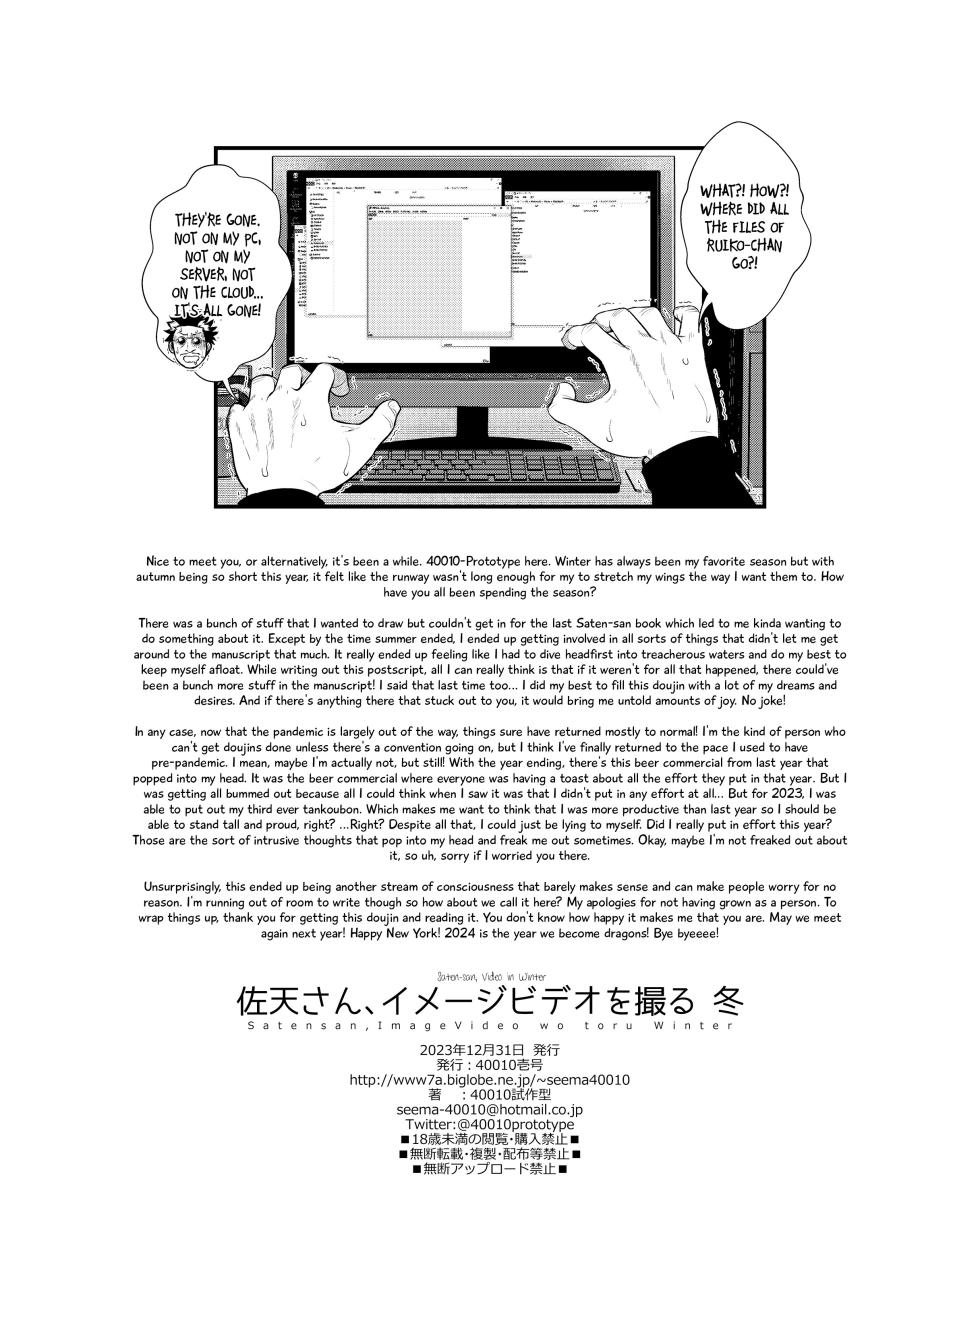 [40010 1-GO (Shimanto Shisakugata)] Saten-san, Image Video o Toru Winter | Saten-san; Video in Winter (Toaru Kagaku no Railgun) [English] [Digital] - Page 34